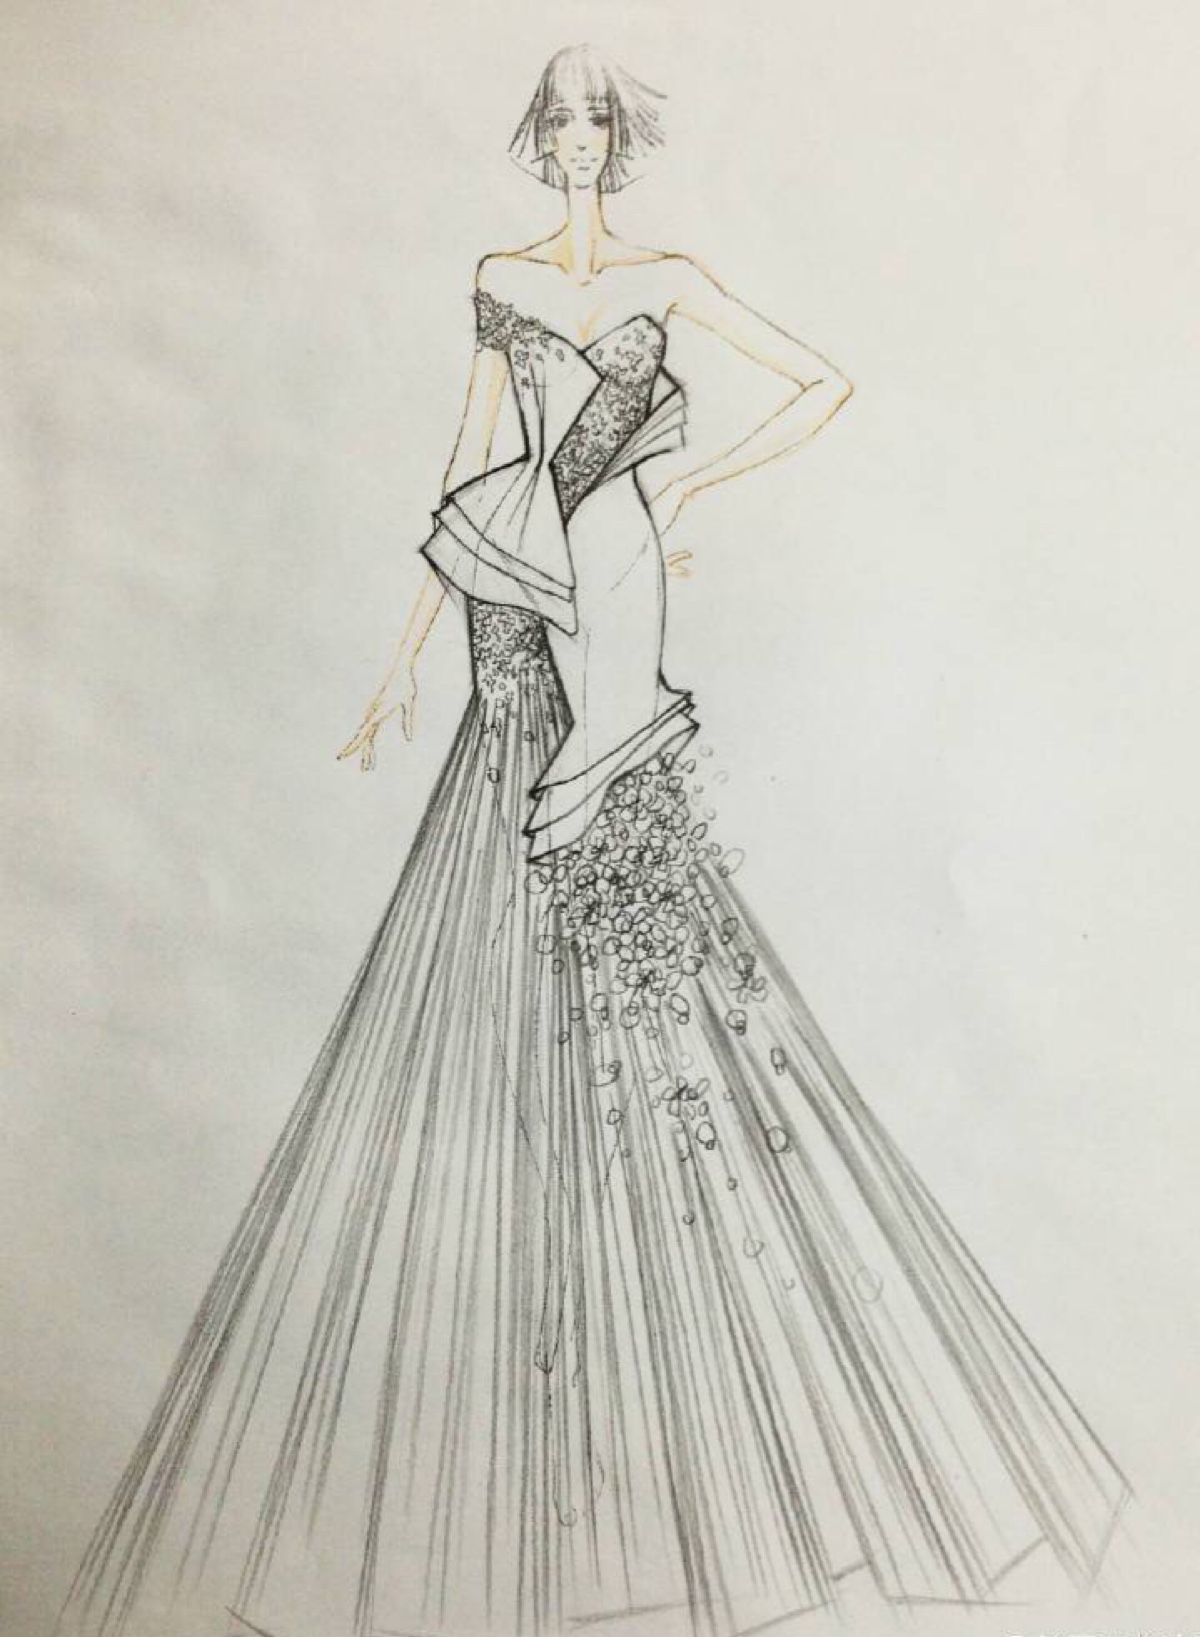 yu 2014婚纱手稿 手绘 铅笔画 等风来 素材 婚纱礼服